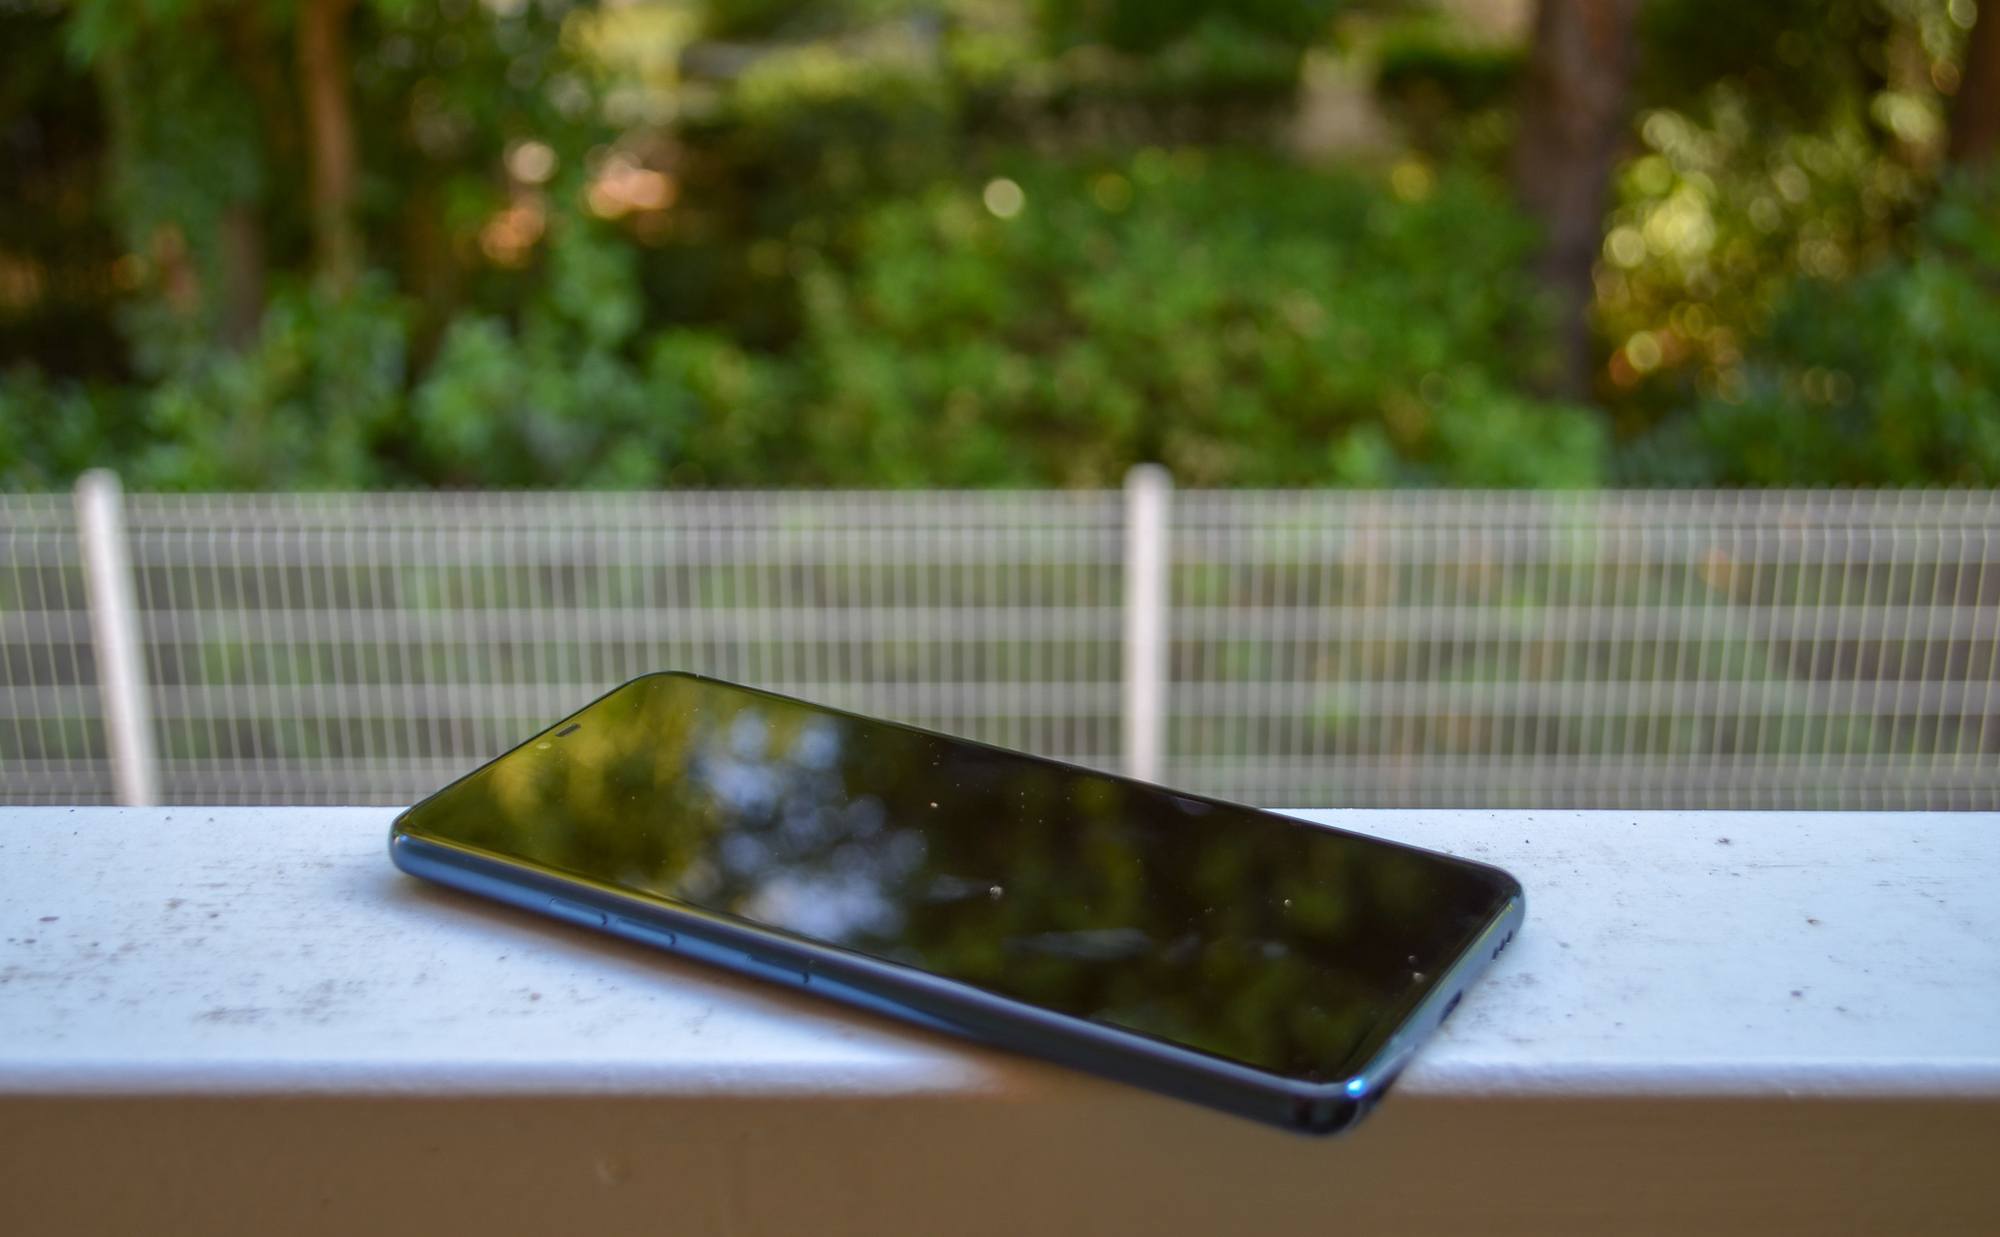 LG DSC 0411 Test – LG G7 ThinQ : Sur la pente de la réussite mais toujours pas Leader Android